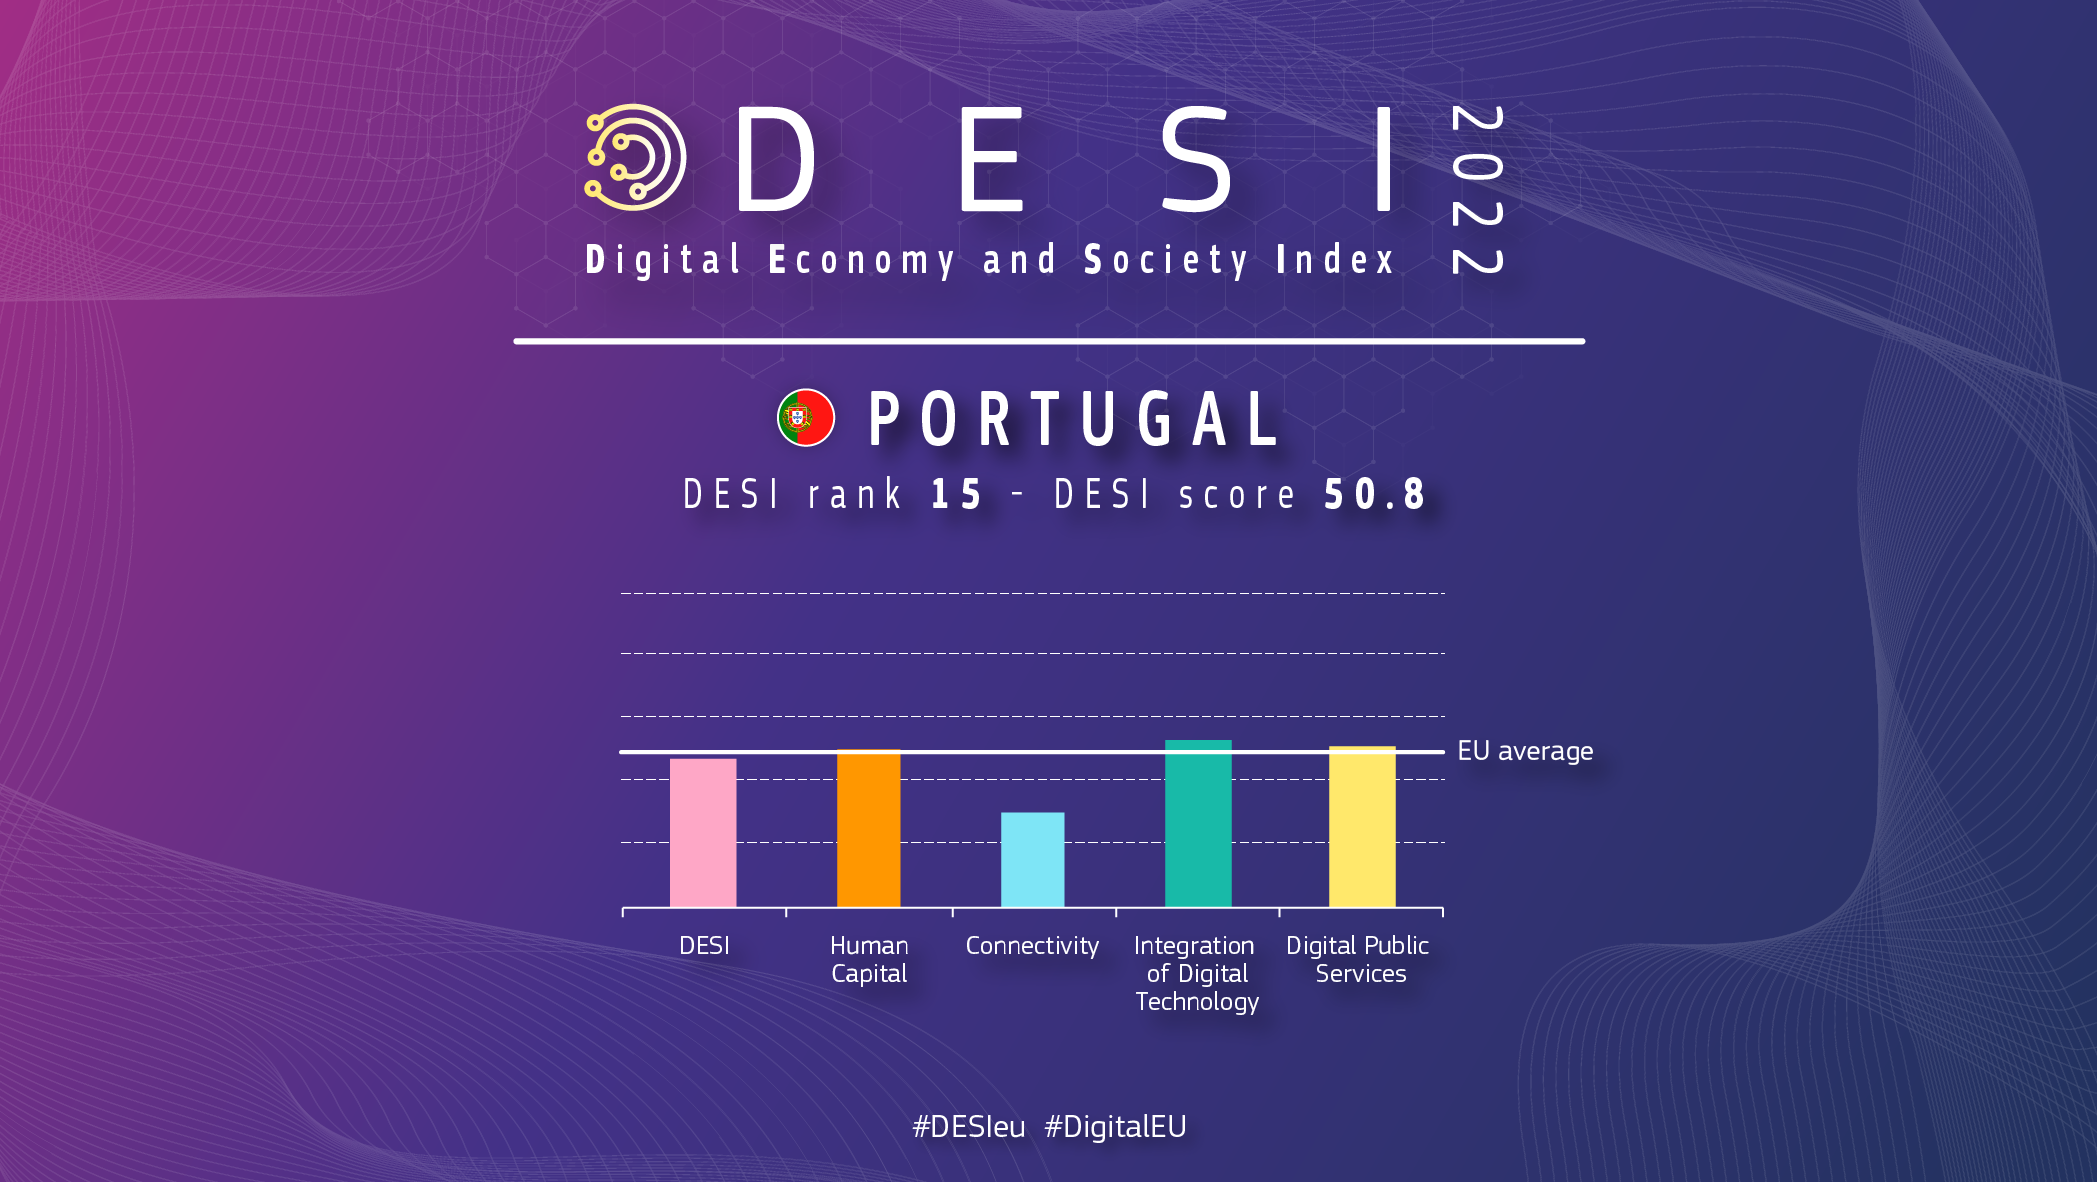 Aperçu graphique du Portugal en DESI montrant un classement de 15 avec un score de 50,8